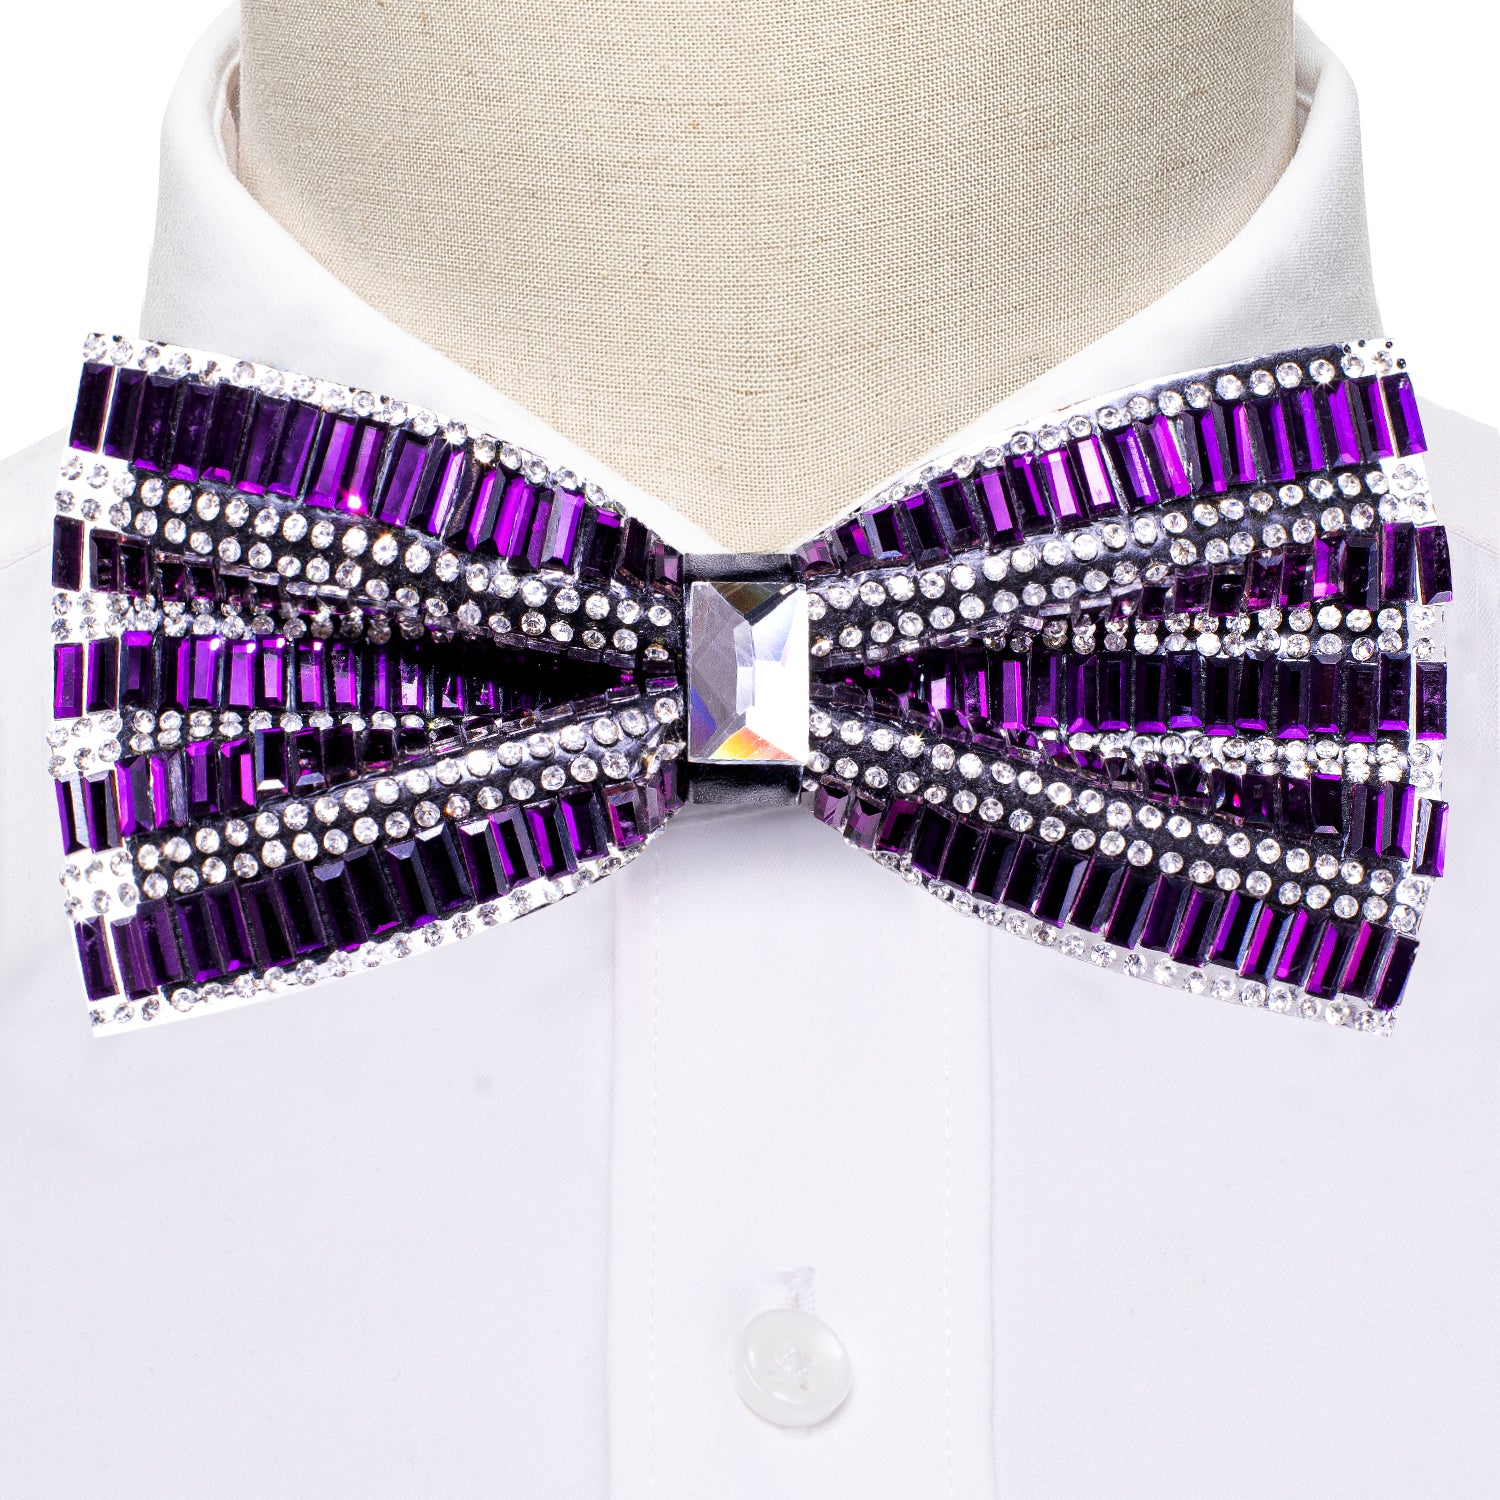 Shining Purple Rhinestones Pre-tied Bowties Fashion For Wedding Party